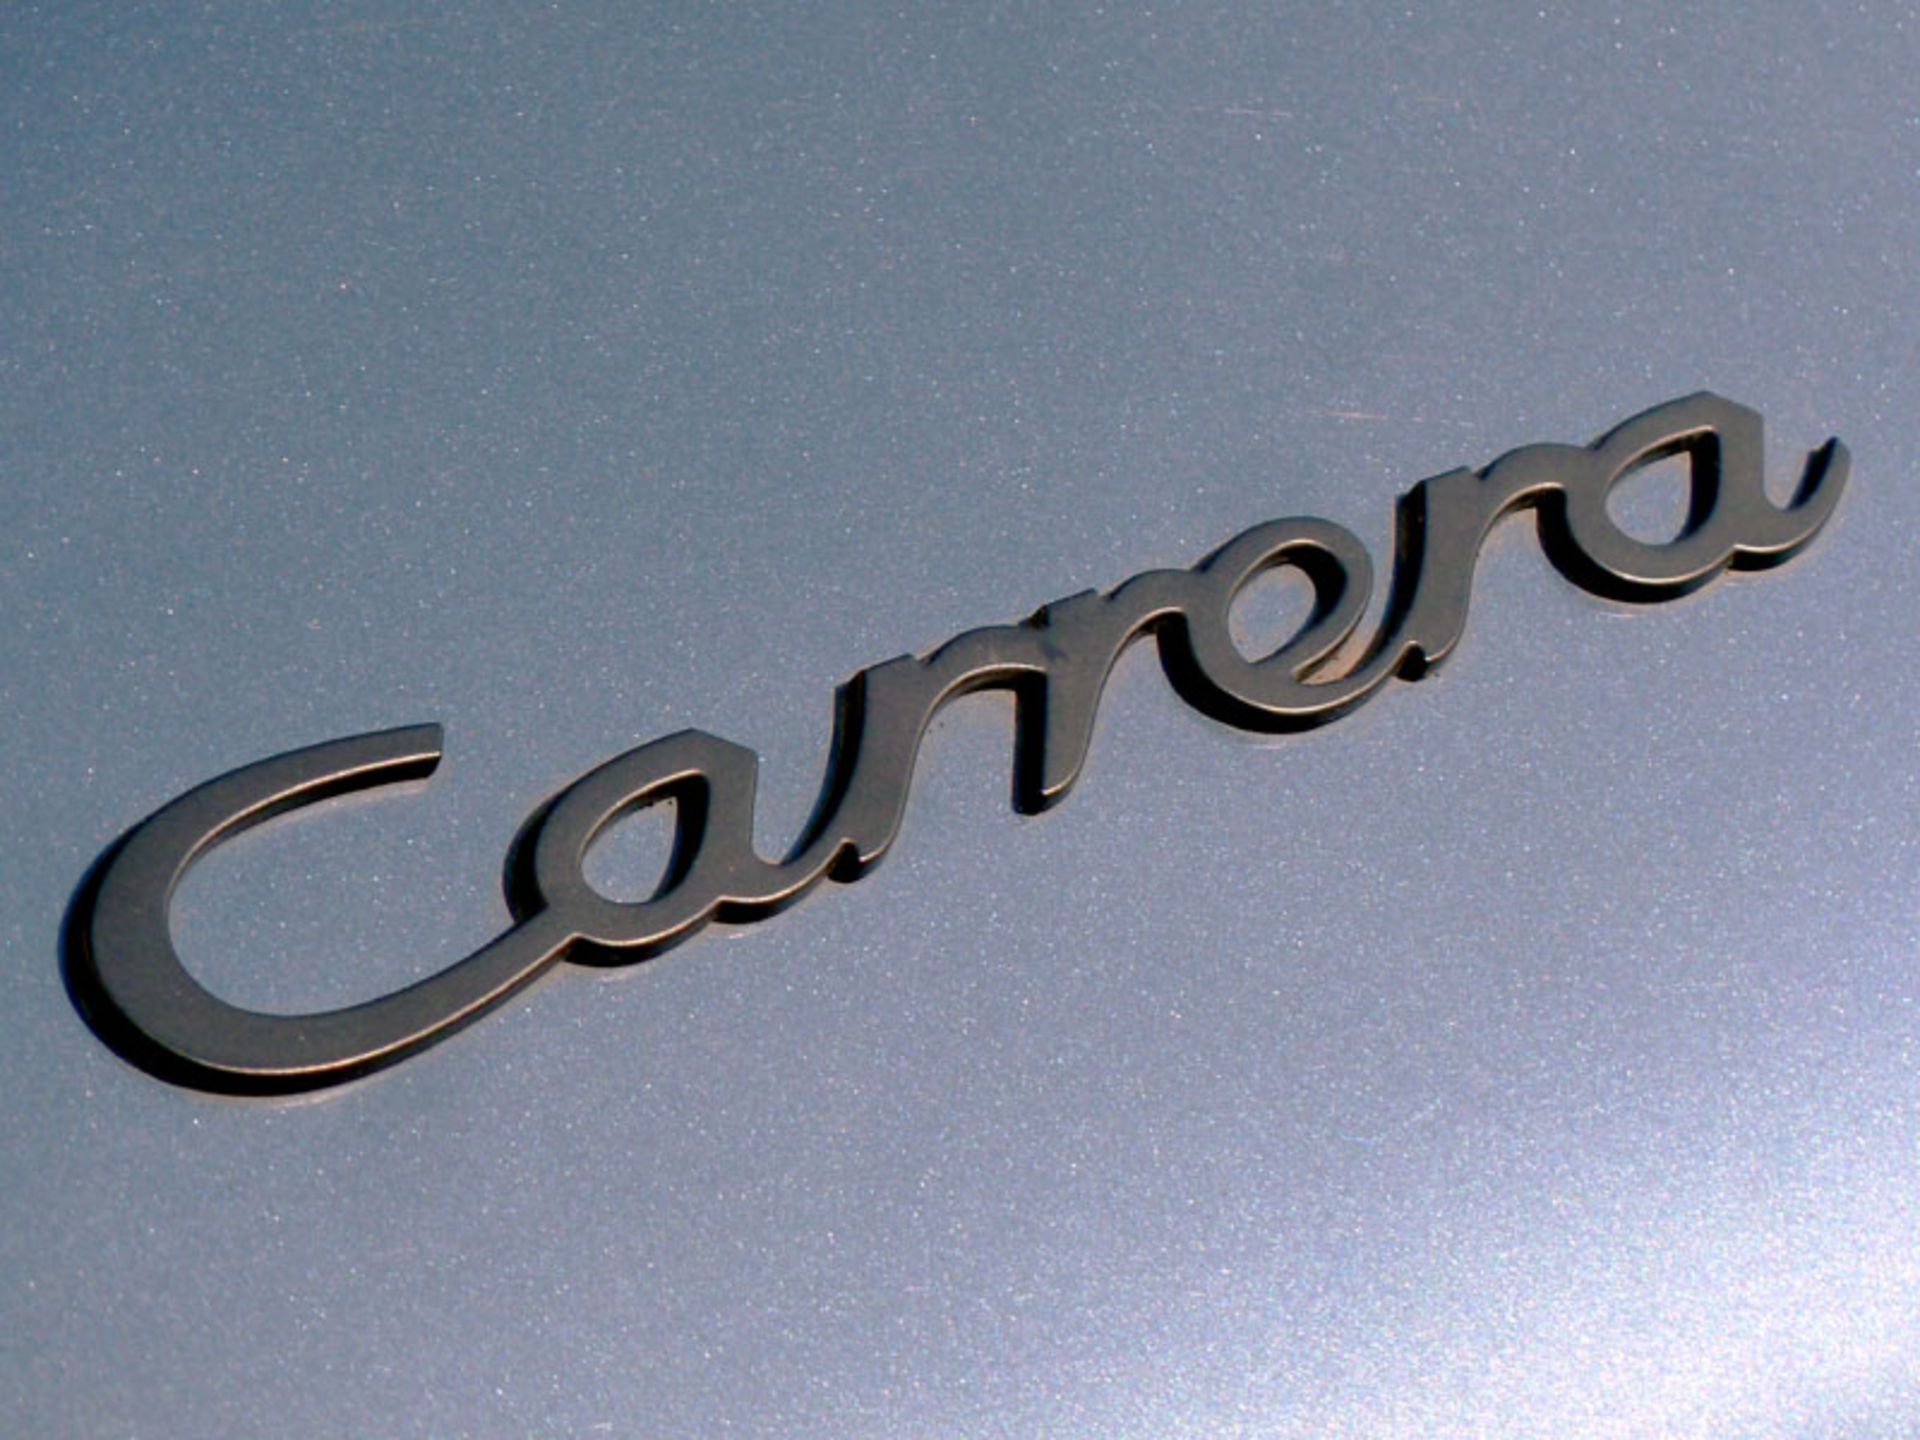 1989 Porsche 911 Carrera 3.2 Cabriolet - Image 3 of 7